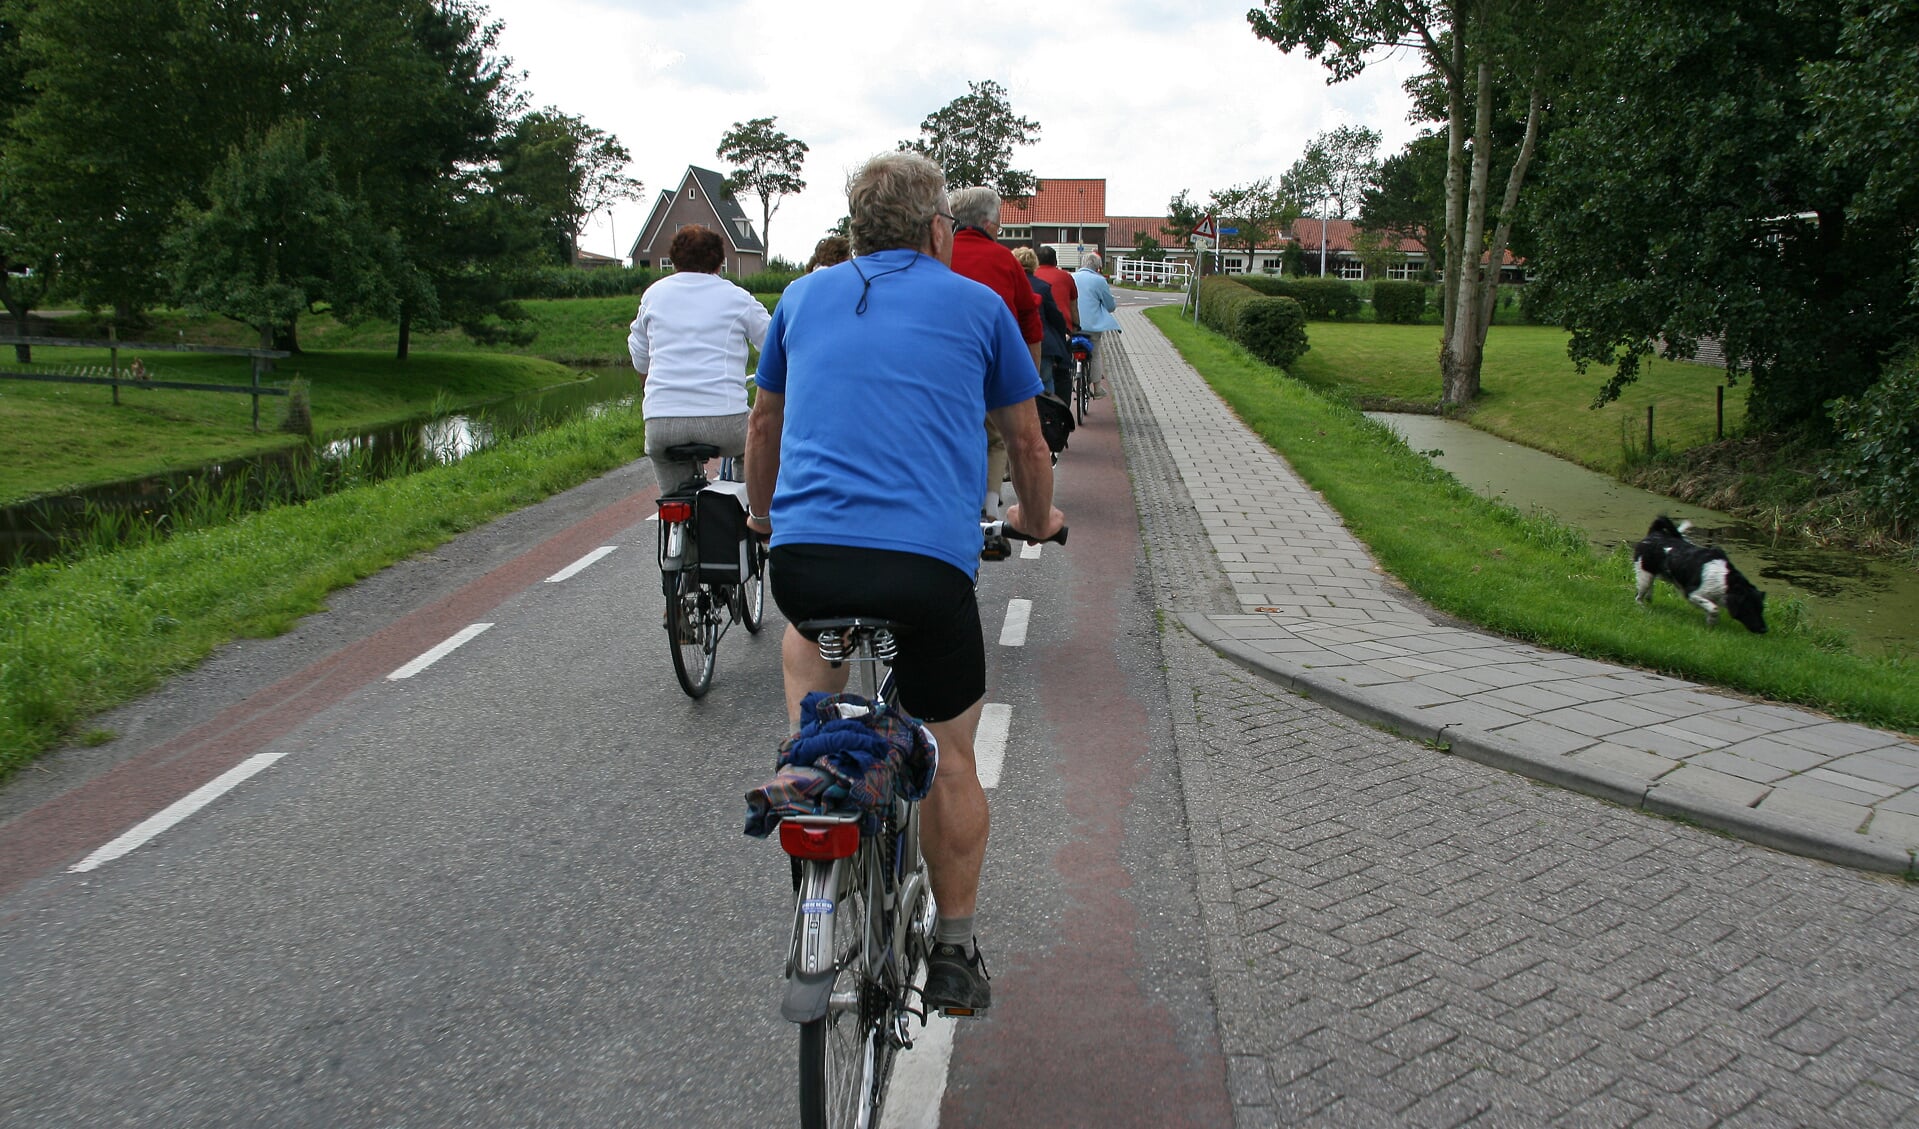 Fietsroutes in en om Alkmaar én in Noord-Holland, begeleid door ervaren fietsgidsen.